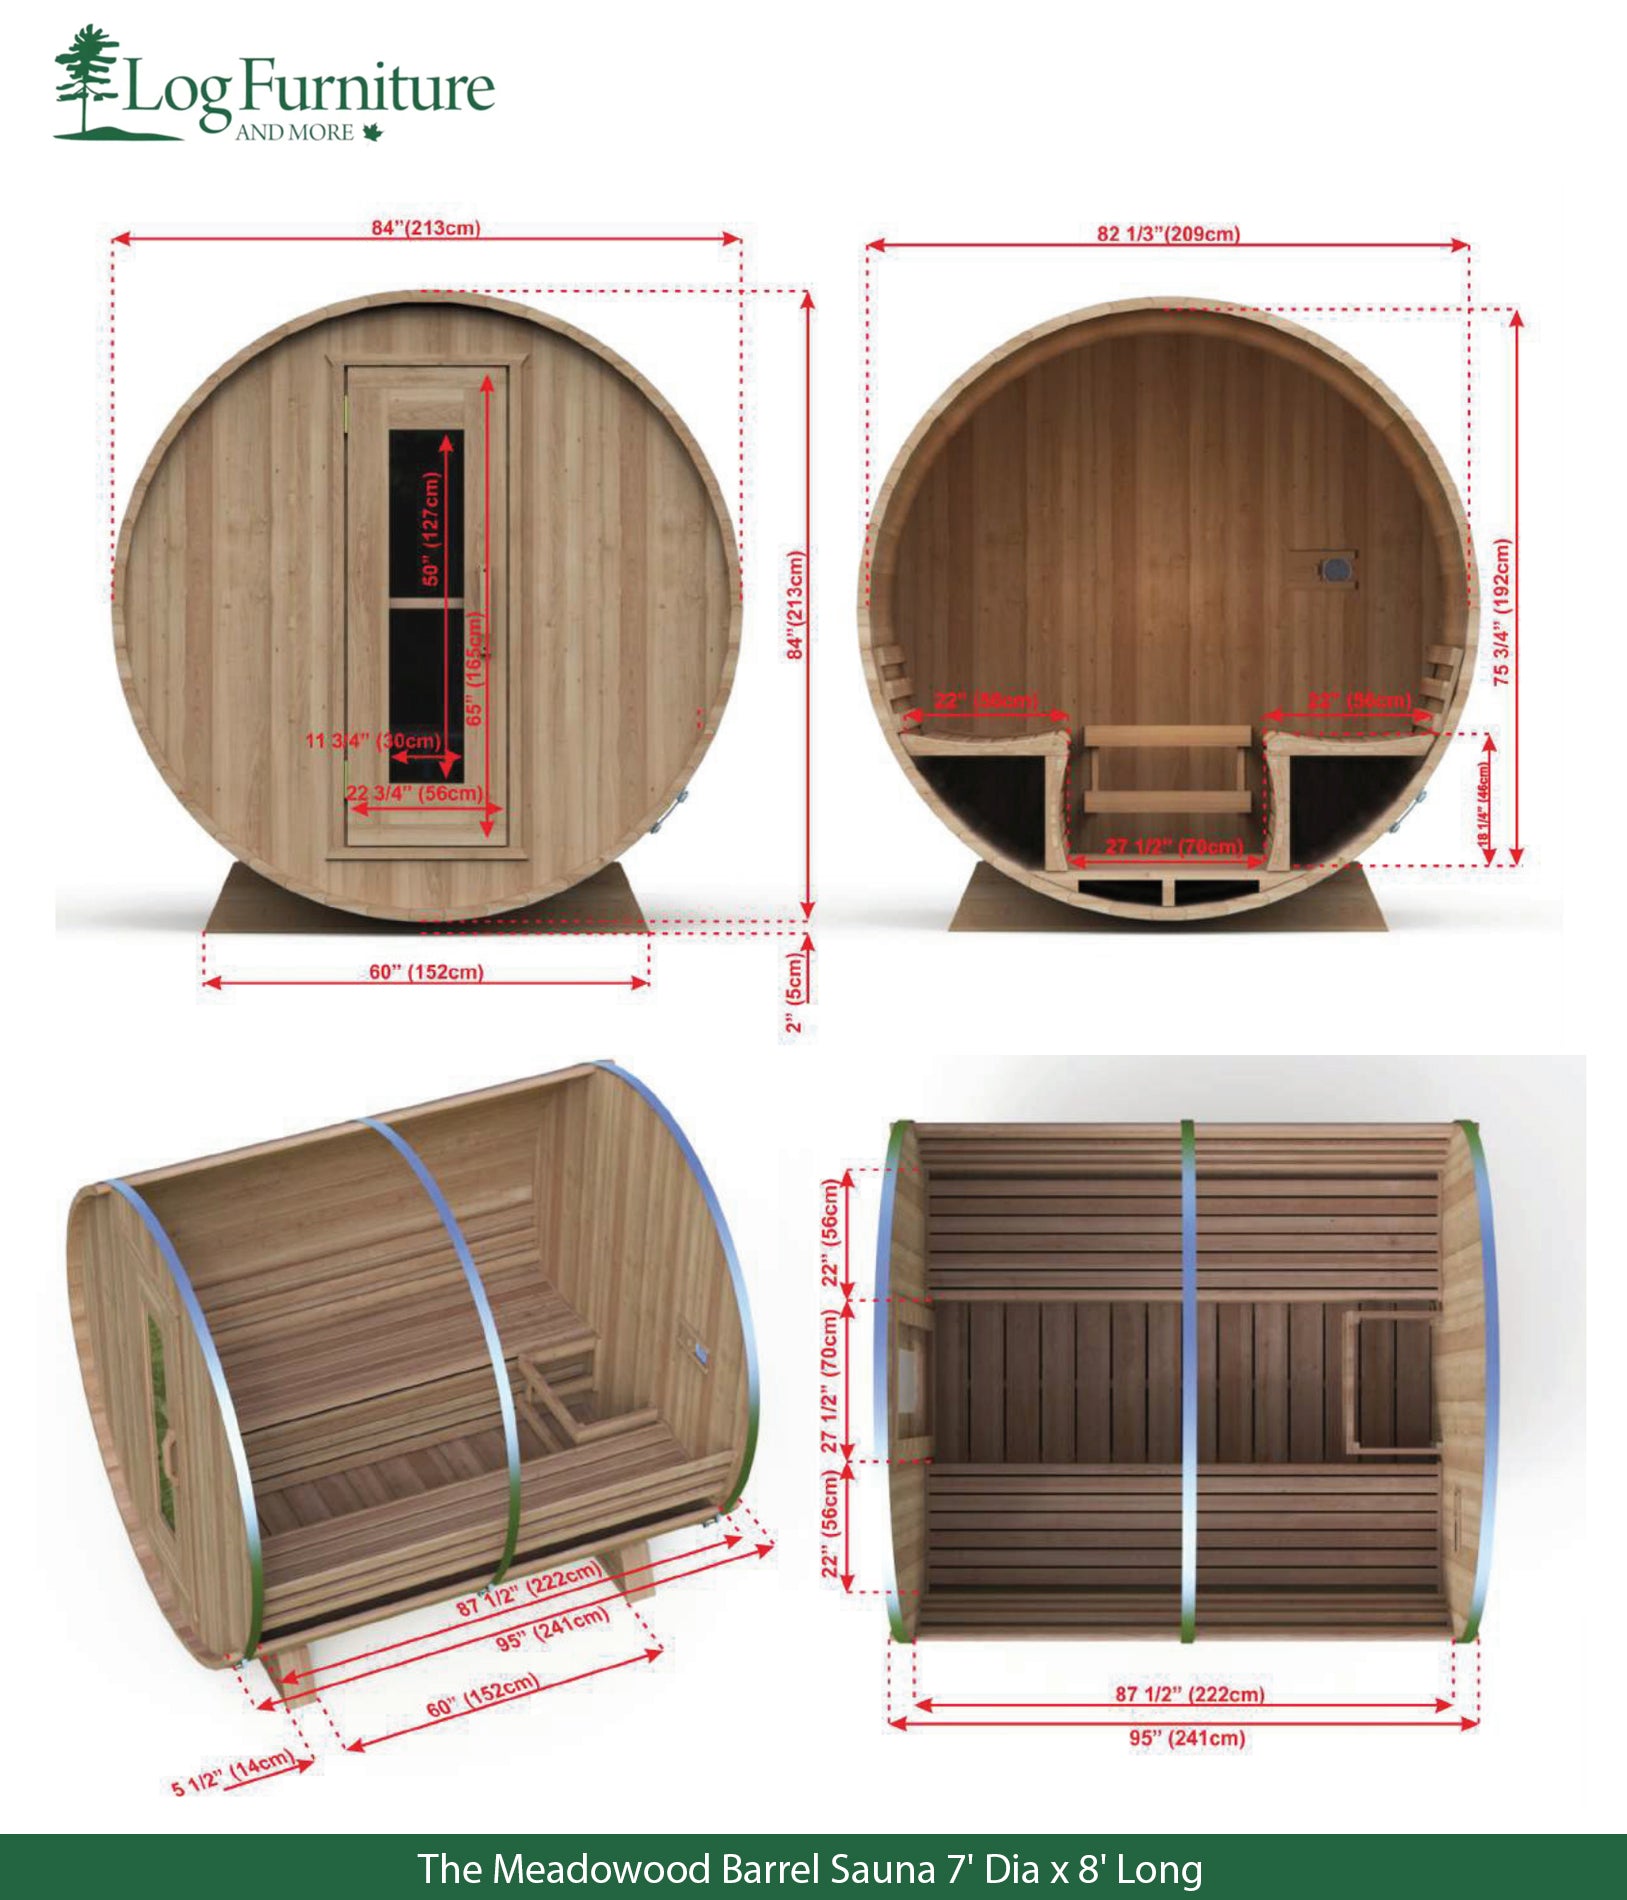 The Meadowood Barrel Sauna - 7' Dia x 8' Long